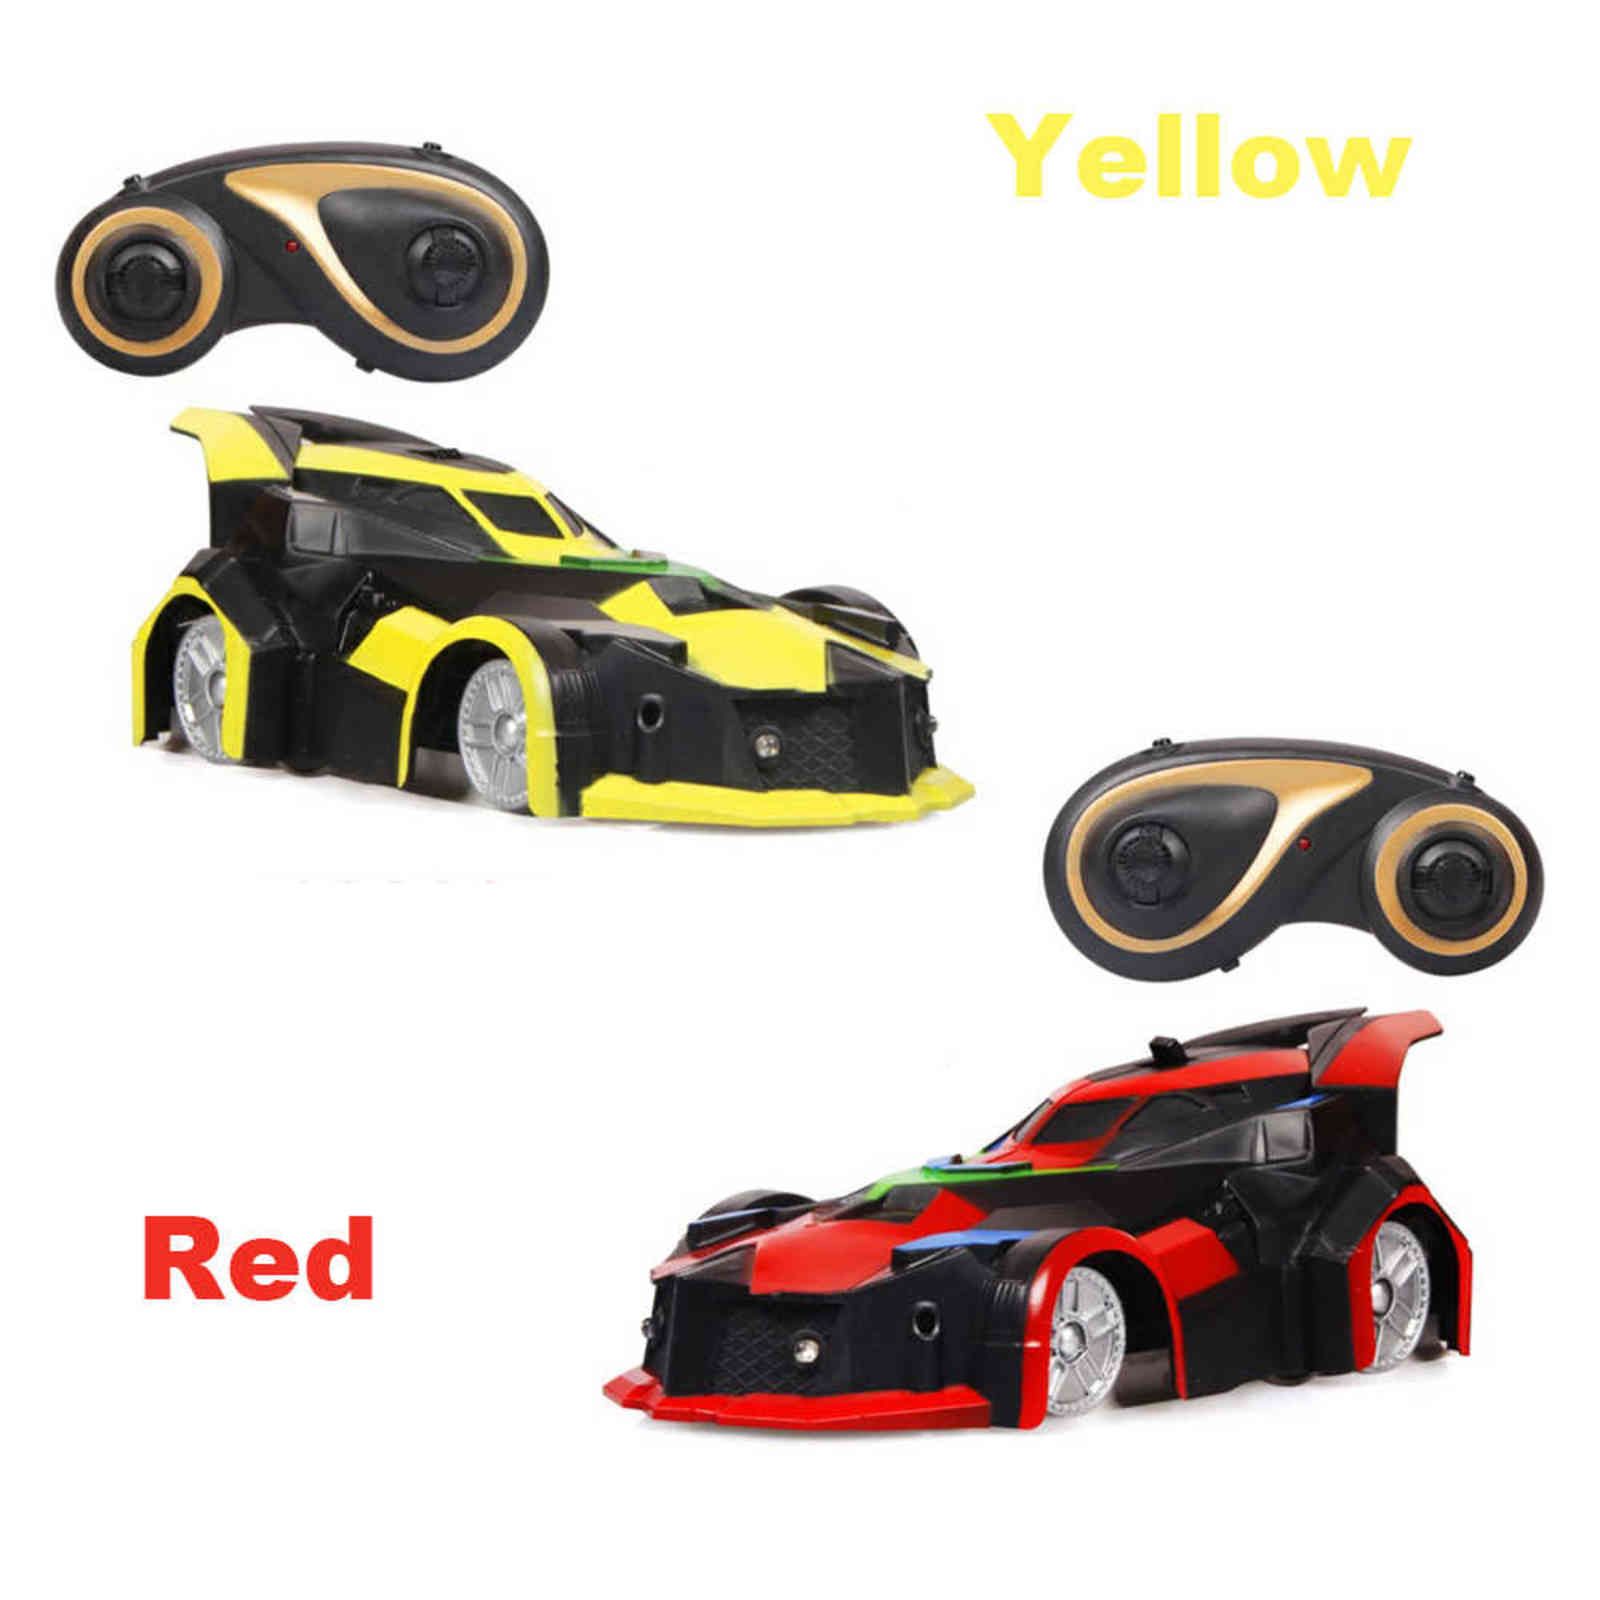 röd och gul